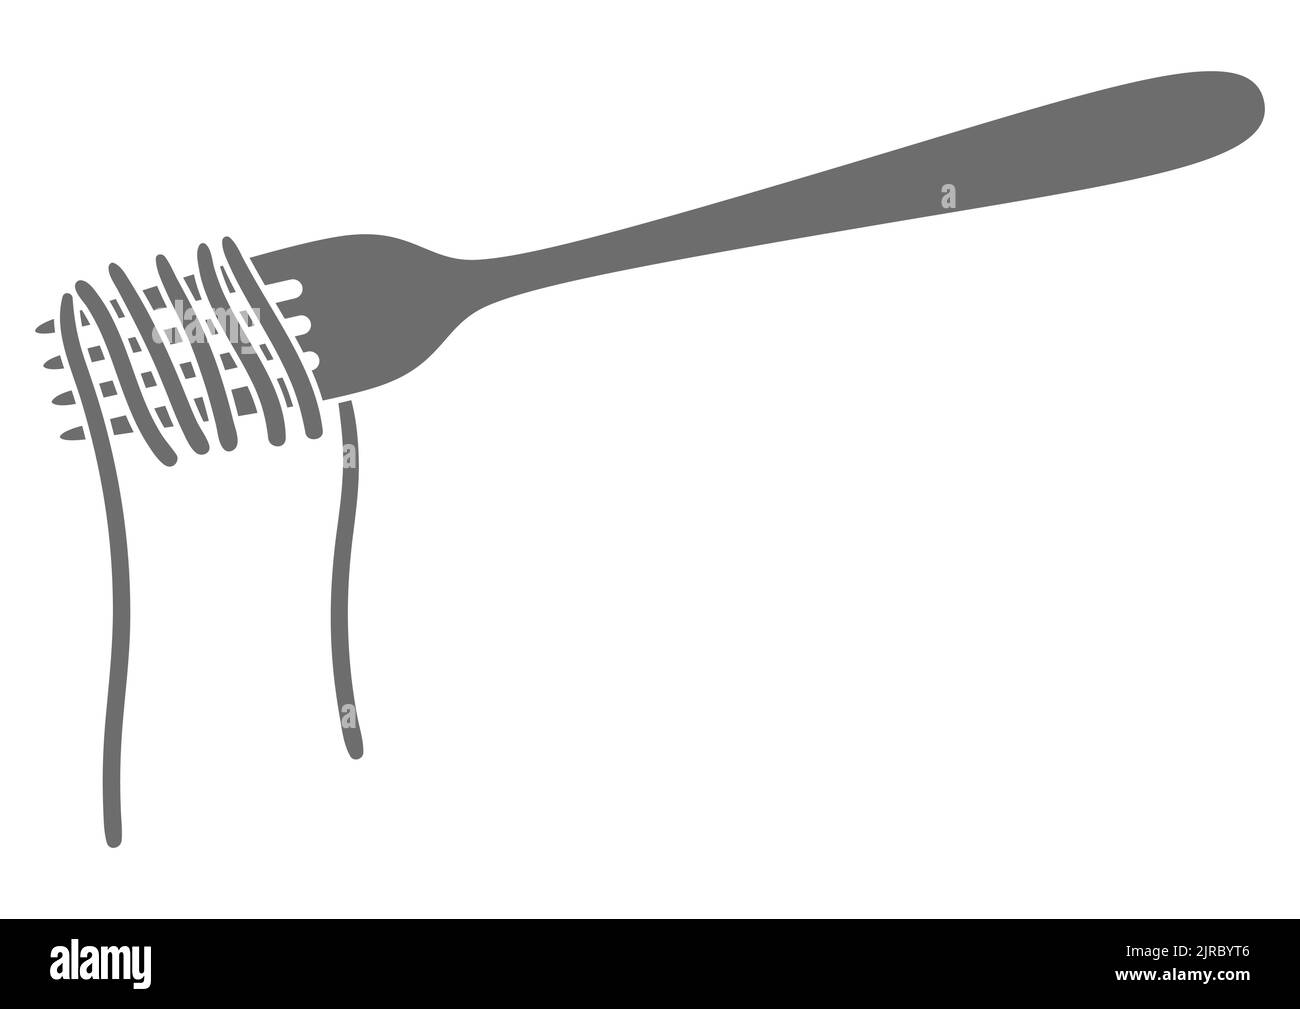 Illustrazione degli spaghetti di pasta italiana sulla forchetta. Immagine culinaria per menu di ristoranti. Illustrazione Vettoriale